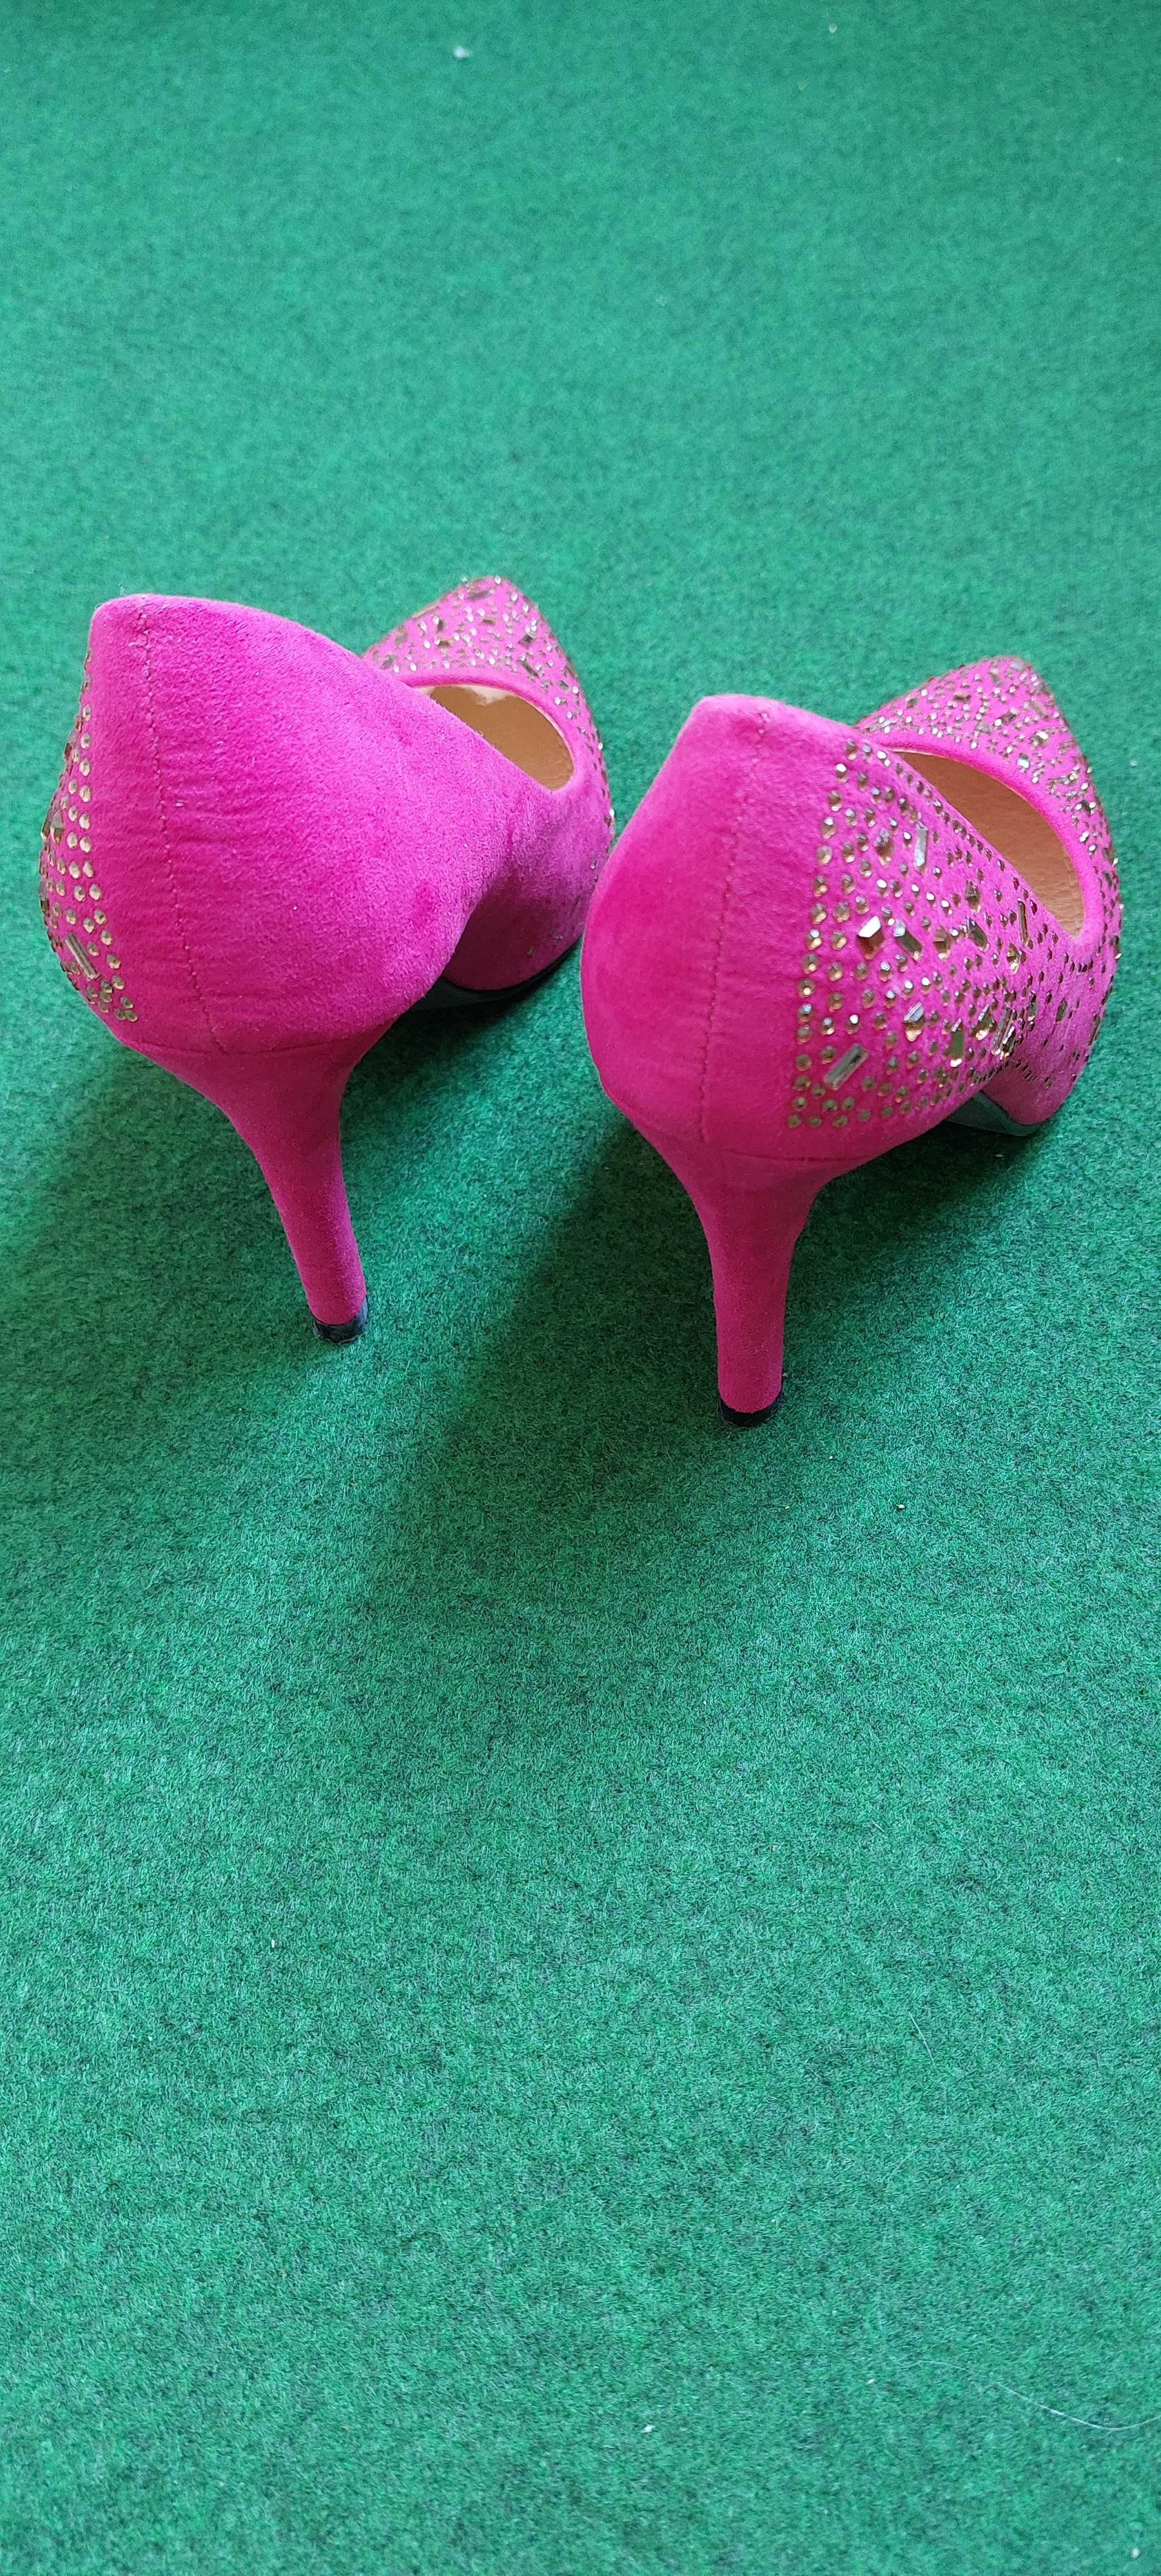 Елегантни  розови обувки номер 36